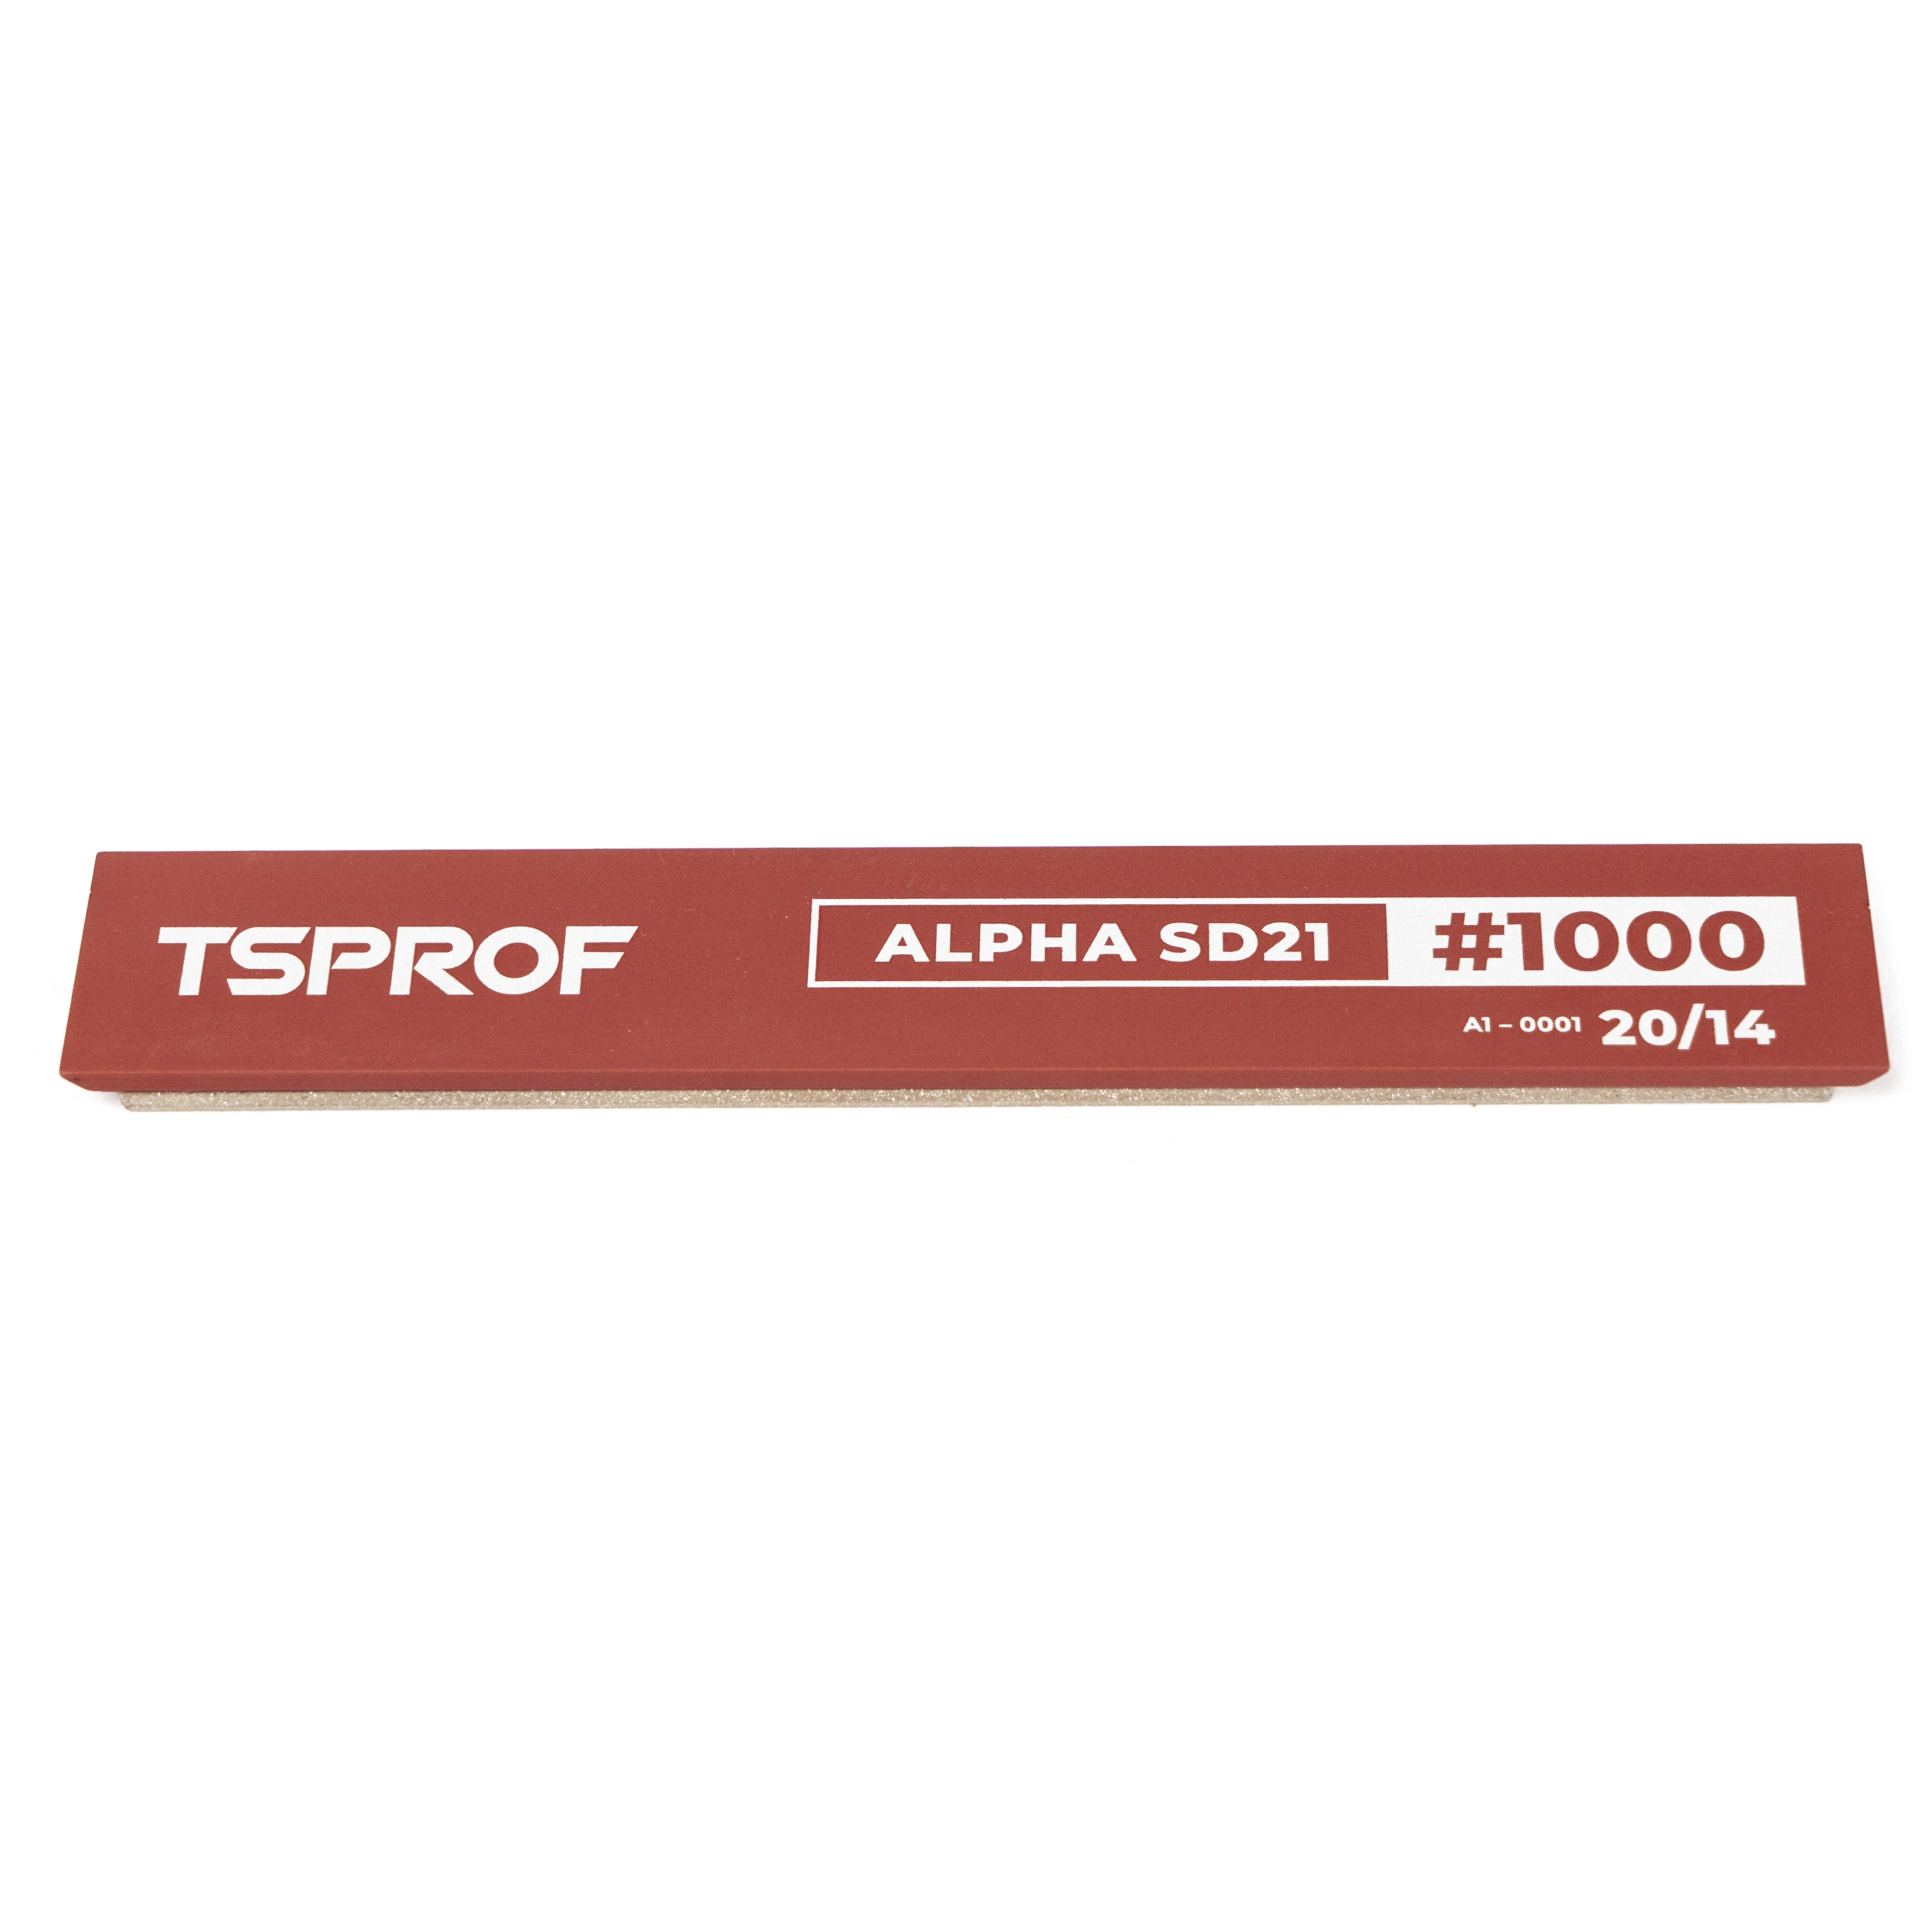 фото Алмазный брусок для заточки TSPROF Alpha SD21, 20/14 (1000 грит) на ytprof.ru